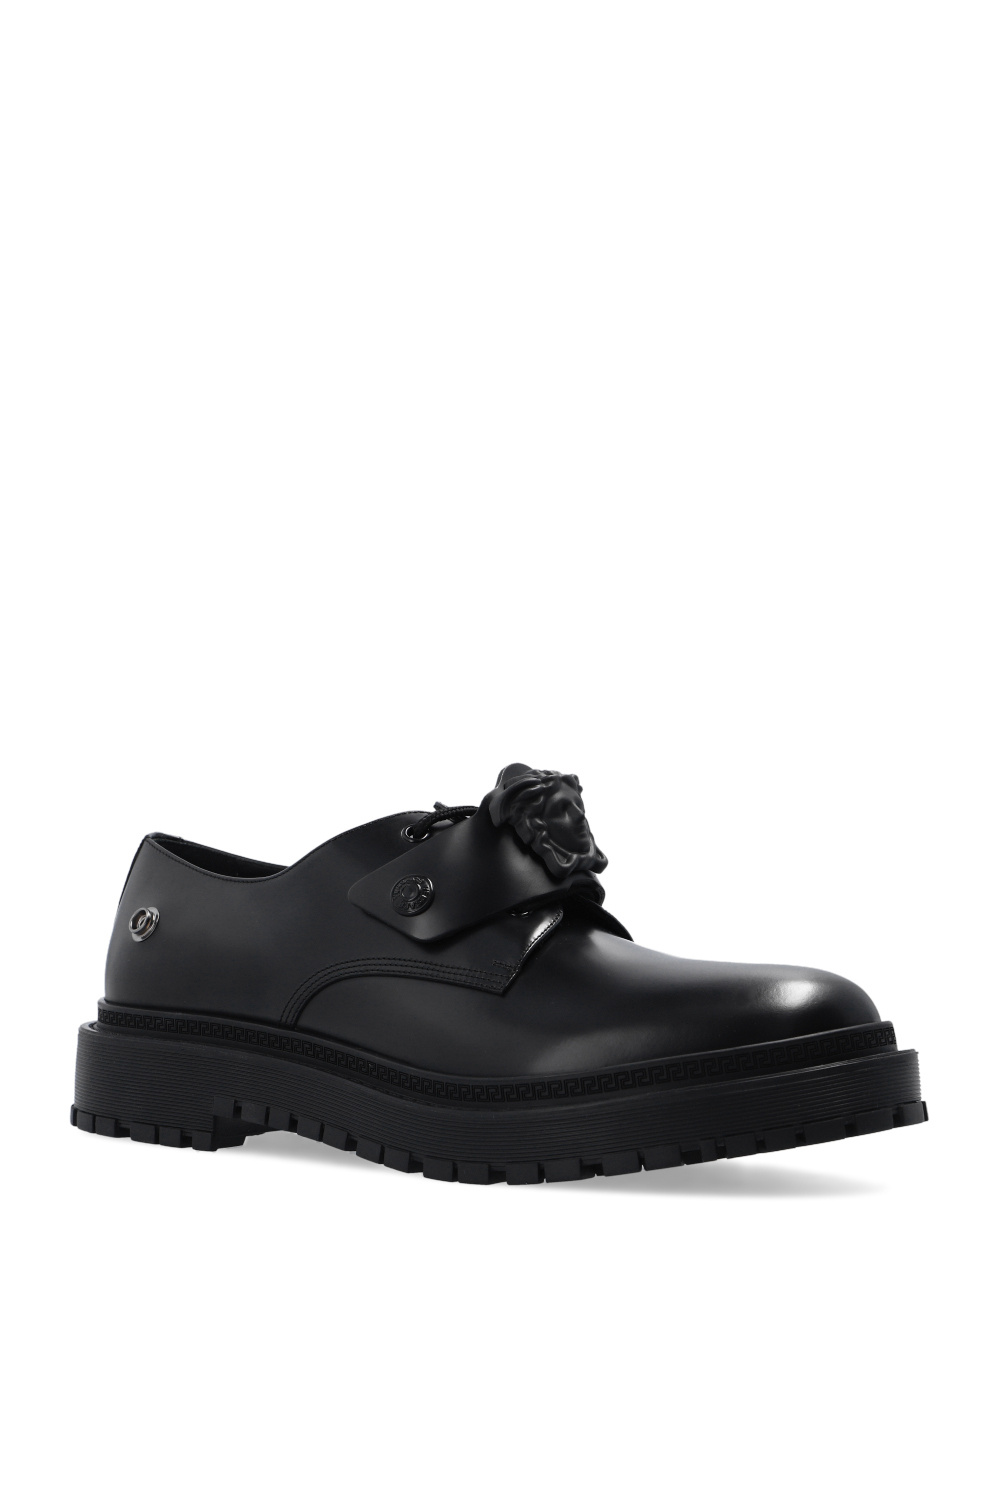 Versace Leather derby shoes | Men's Shoes | Vitkac